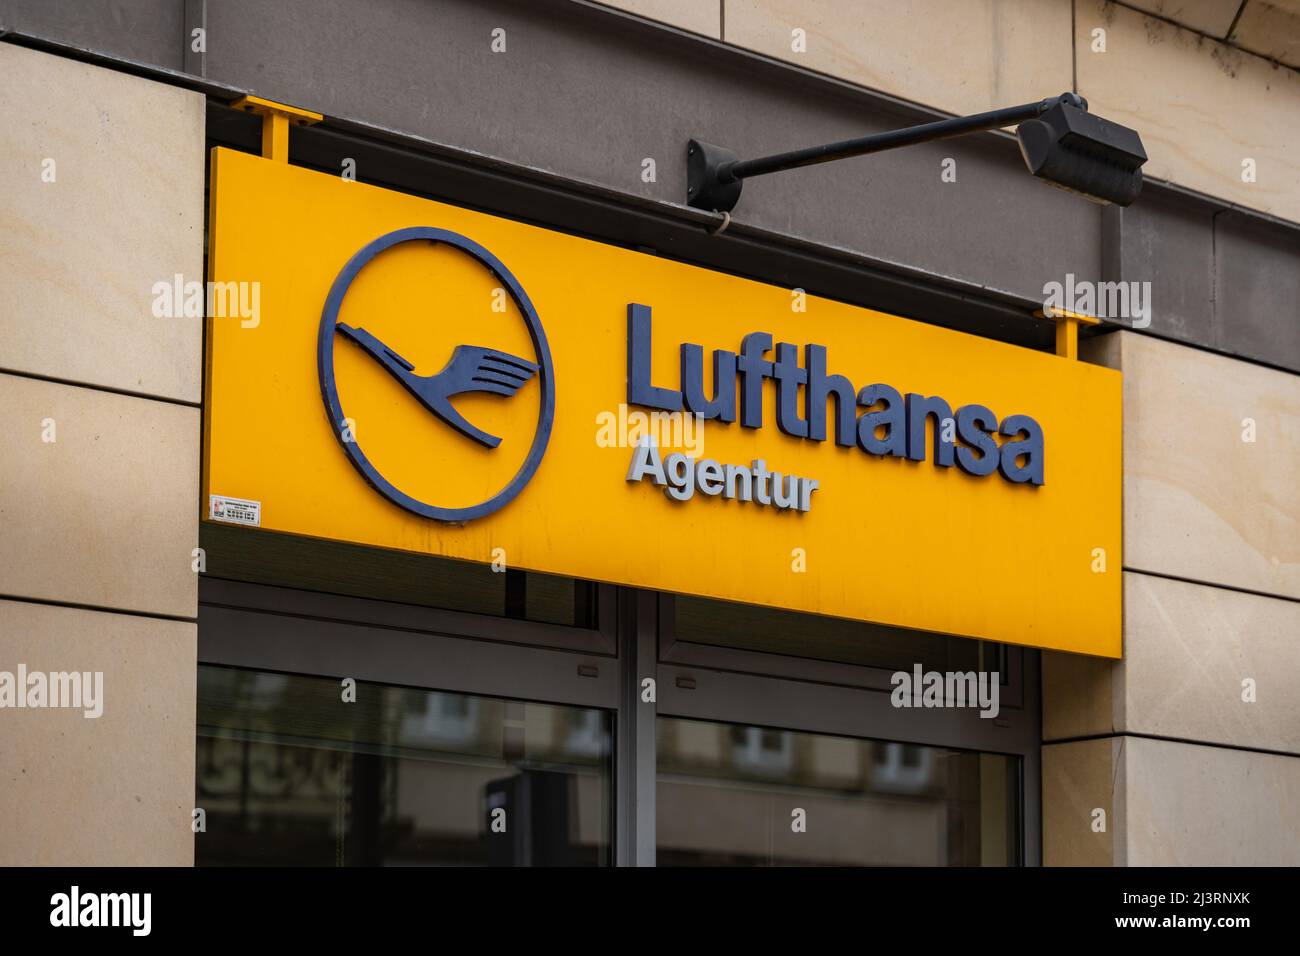 Logo Lufthansa Agentur à l'entrée d'un bâtiment. Signe de l'entreprise à l'extérieur du bâtiment. Une agence de voyage de la plus grande compagnie aérienne allemande. Banque D'Images